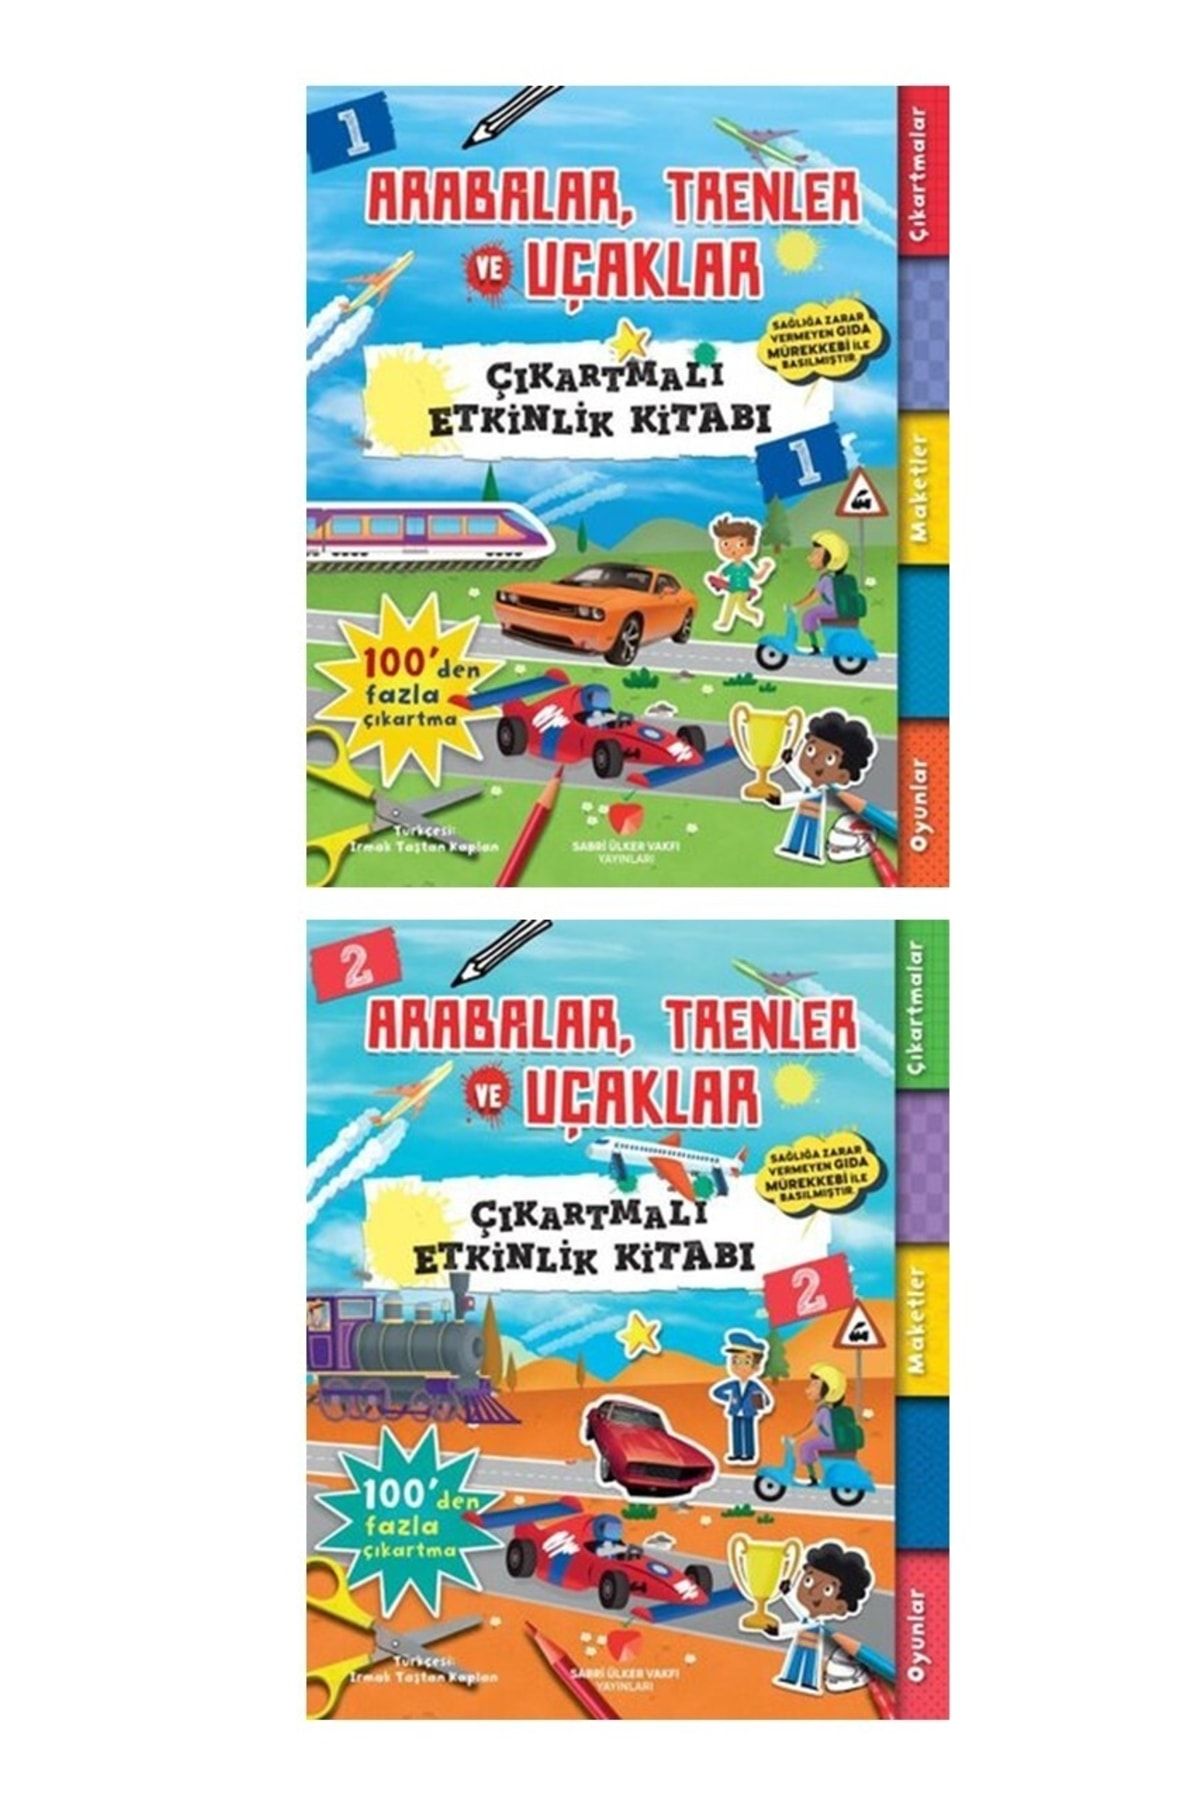 Sabri Ülker Vakfı Yayınları Arabalar,trenler Ve Uçaklar Çıkartmalı Aktivite Ve Etkinlik Kitapları 1 Ve 2.inci Kitap